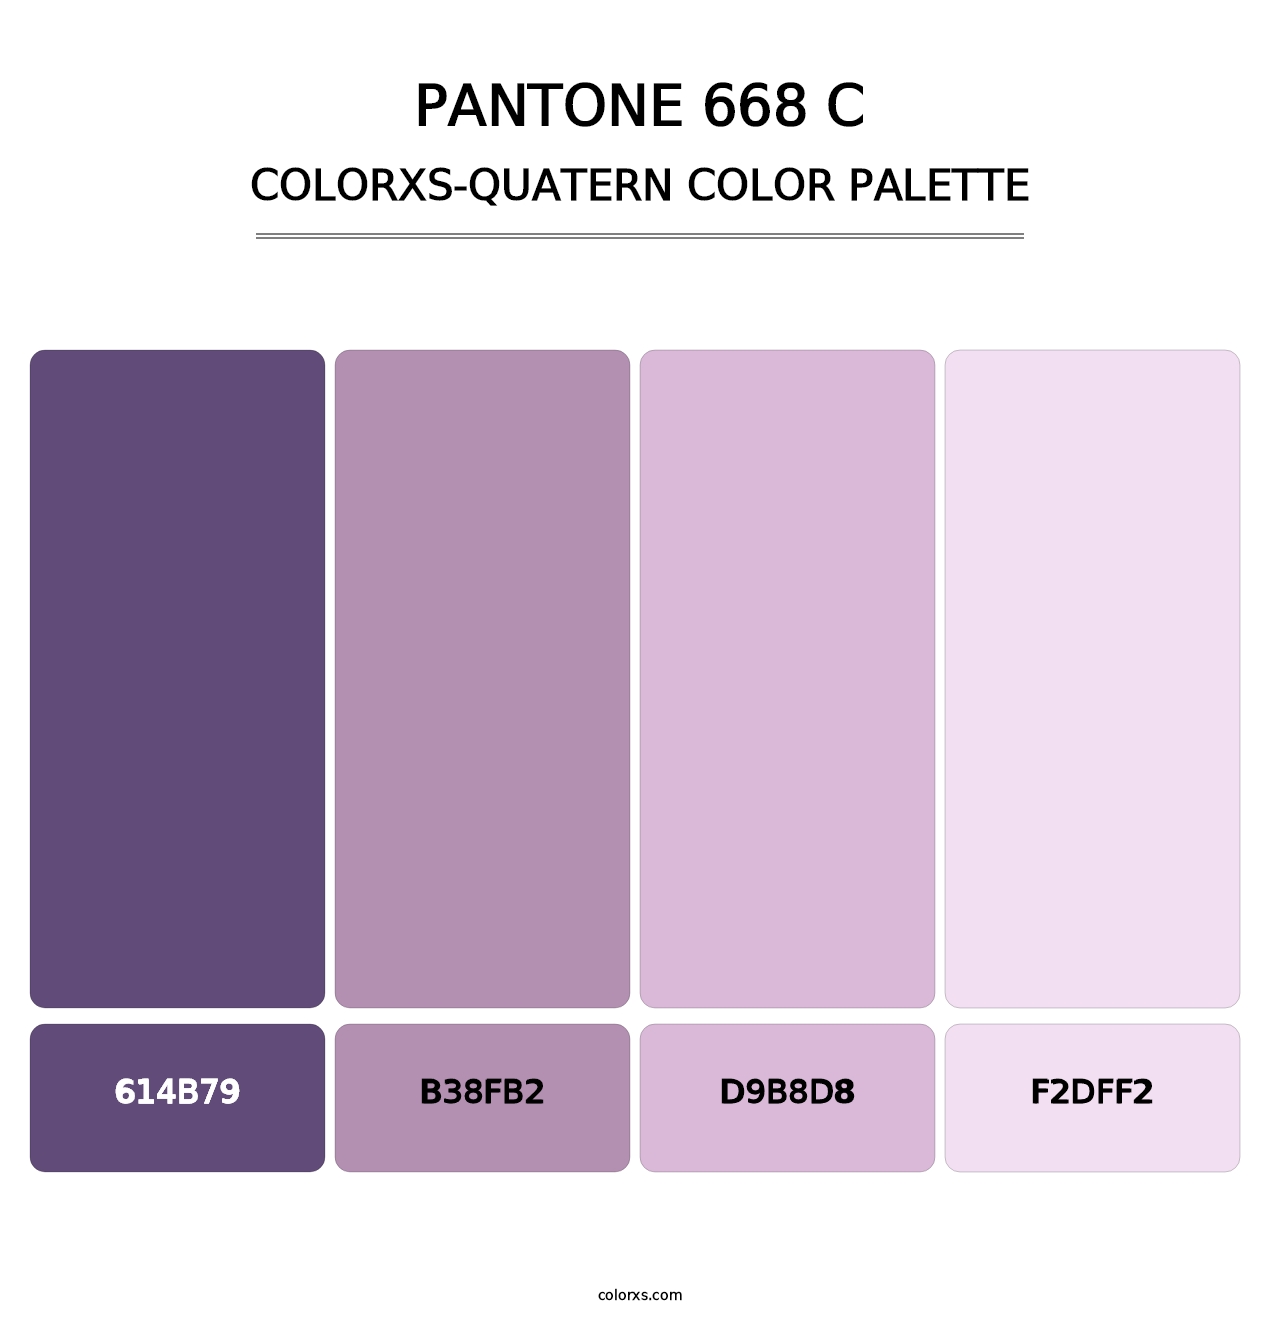 PANTONE 668 C - Colorxs Quatern Palette